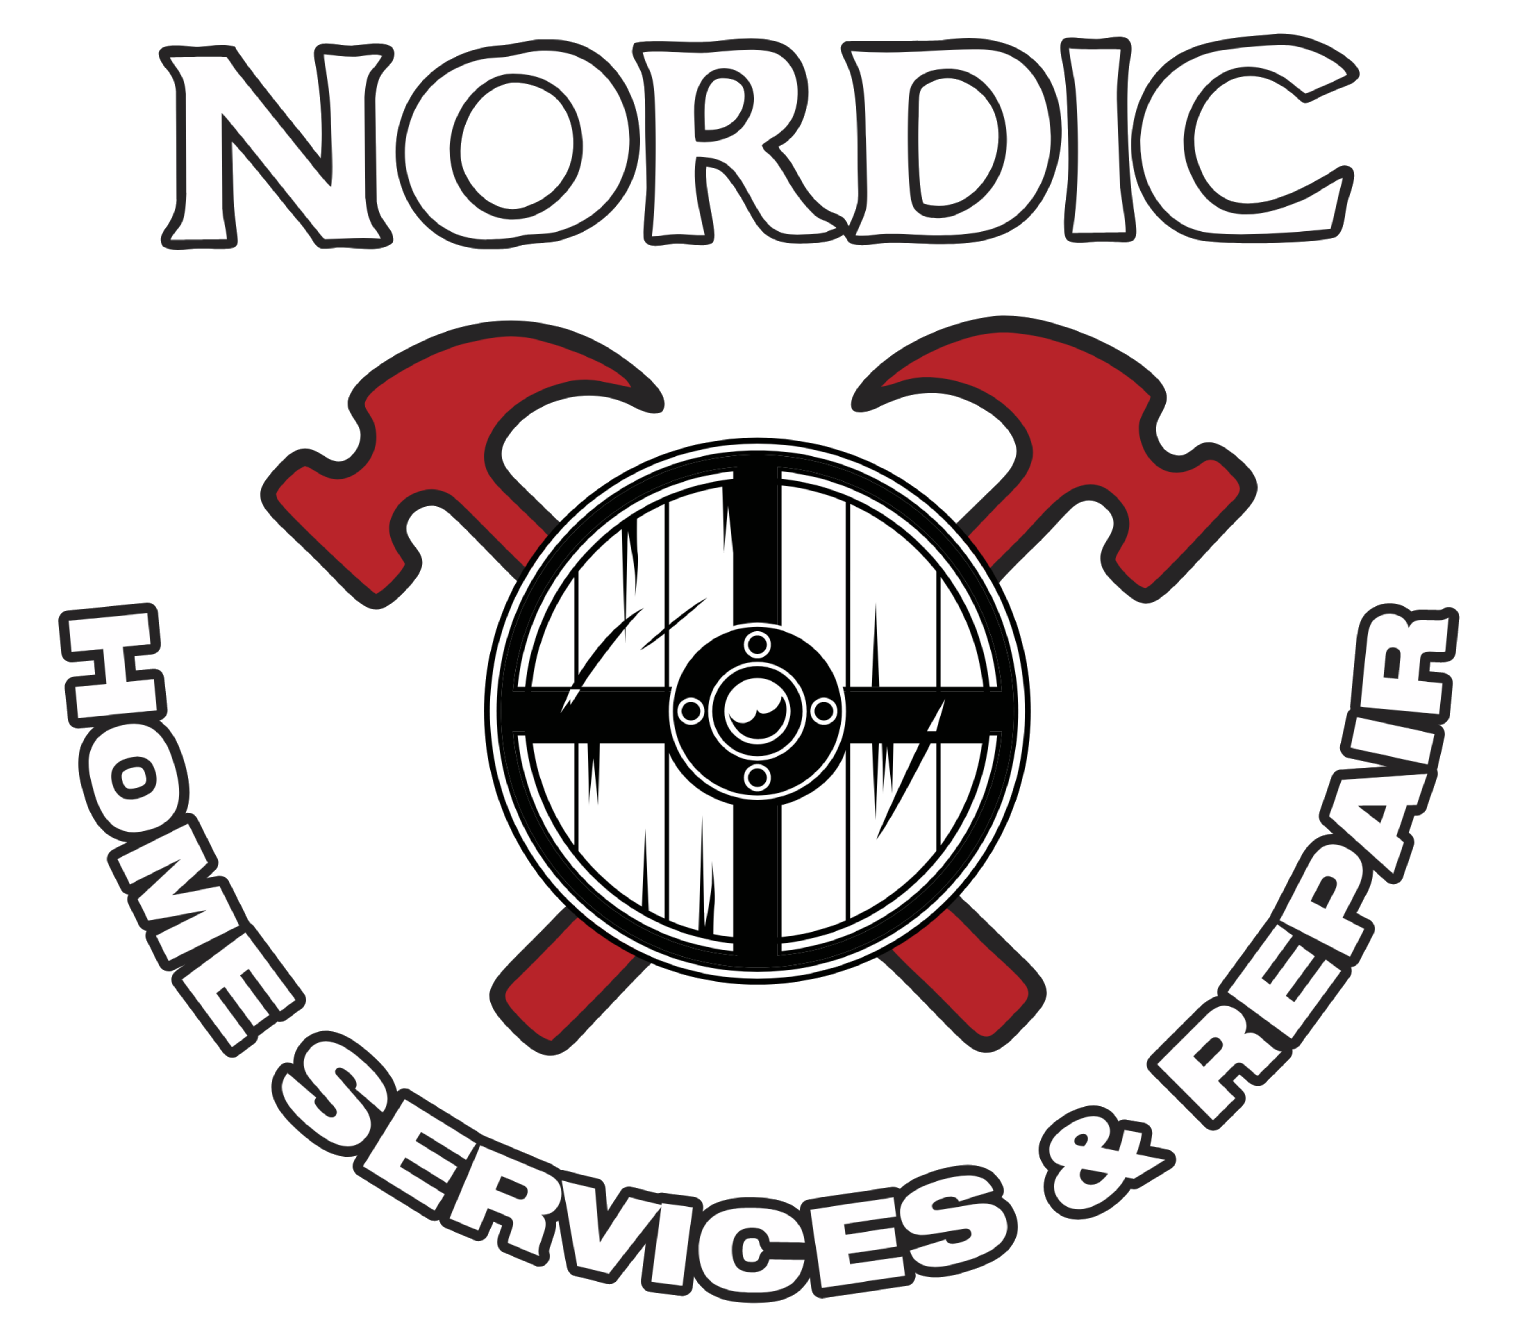 Nordic Services & Repair LLC.